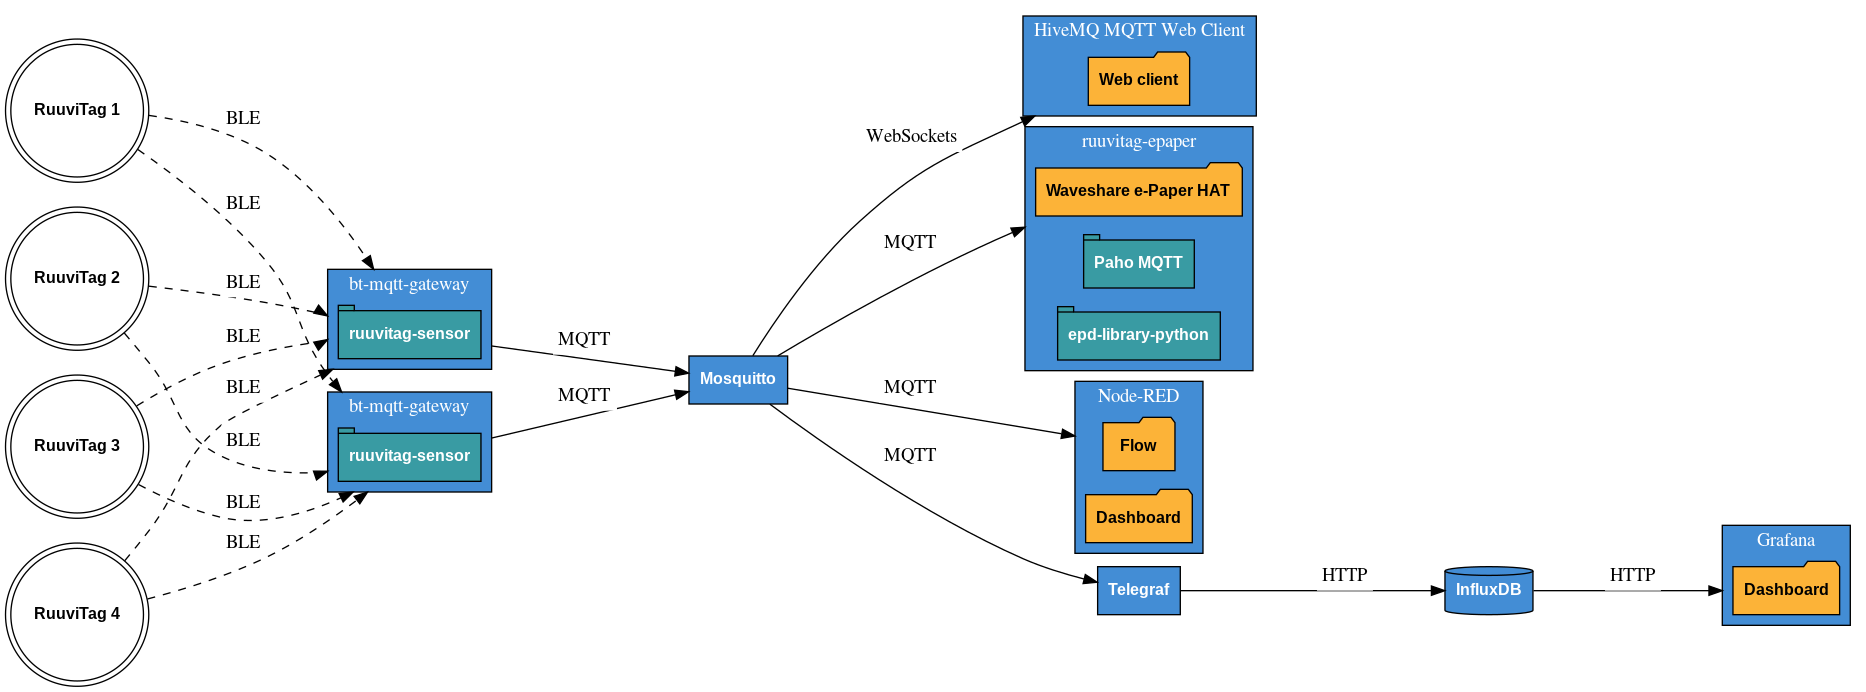 Demo architecture diagram